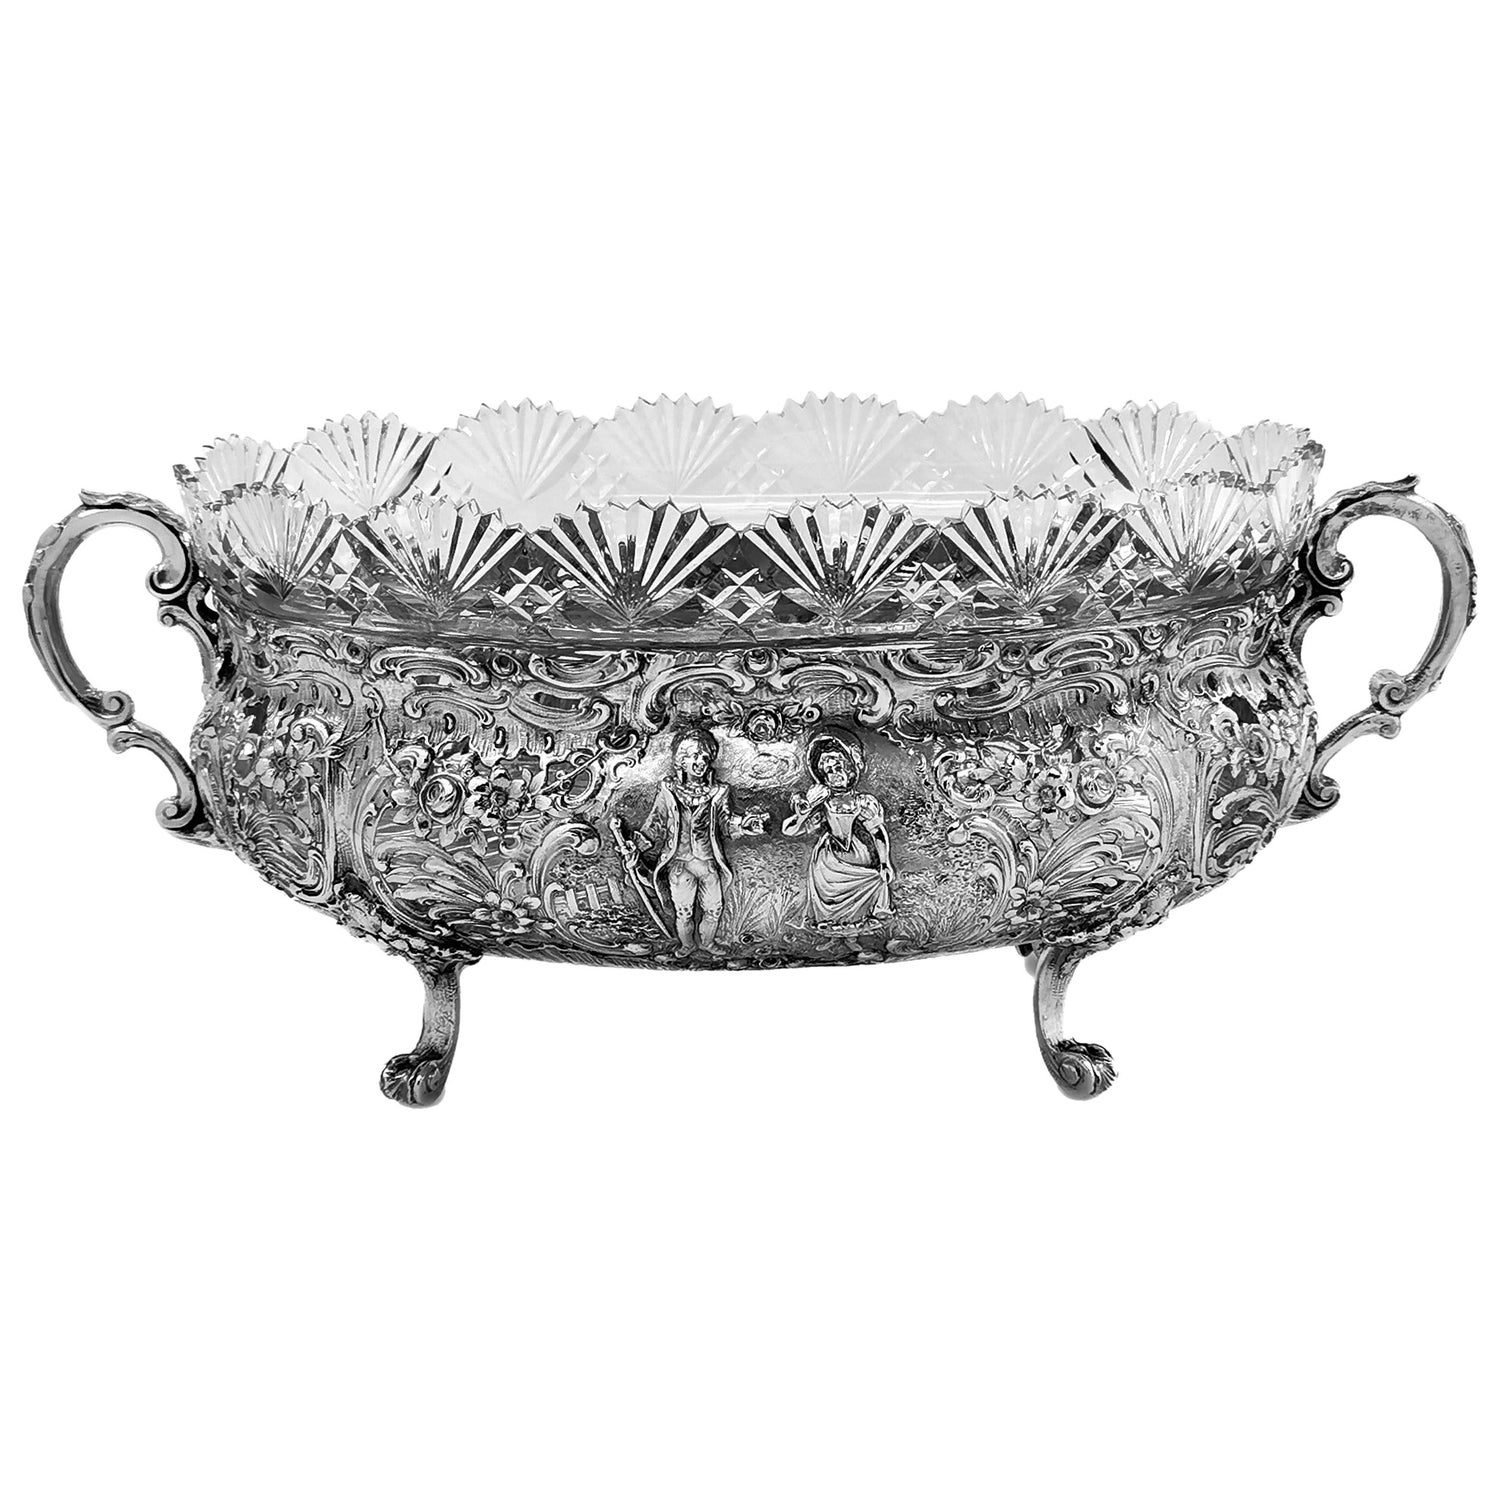 Antique German Solid Silver & Glass Dish / Bowl / Jardinière, c. 1900